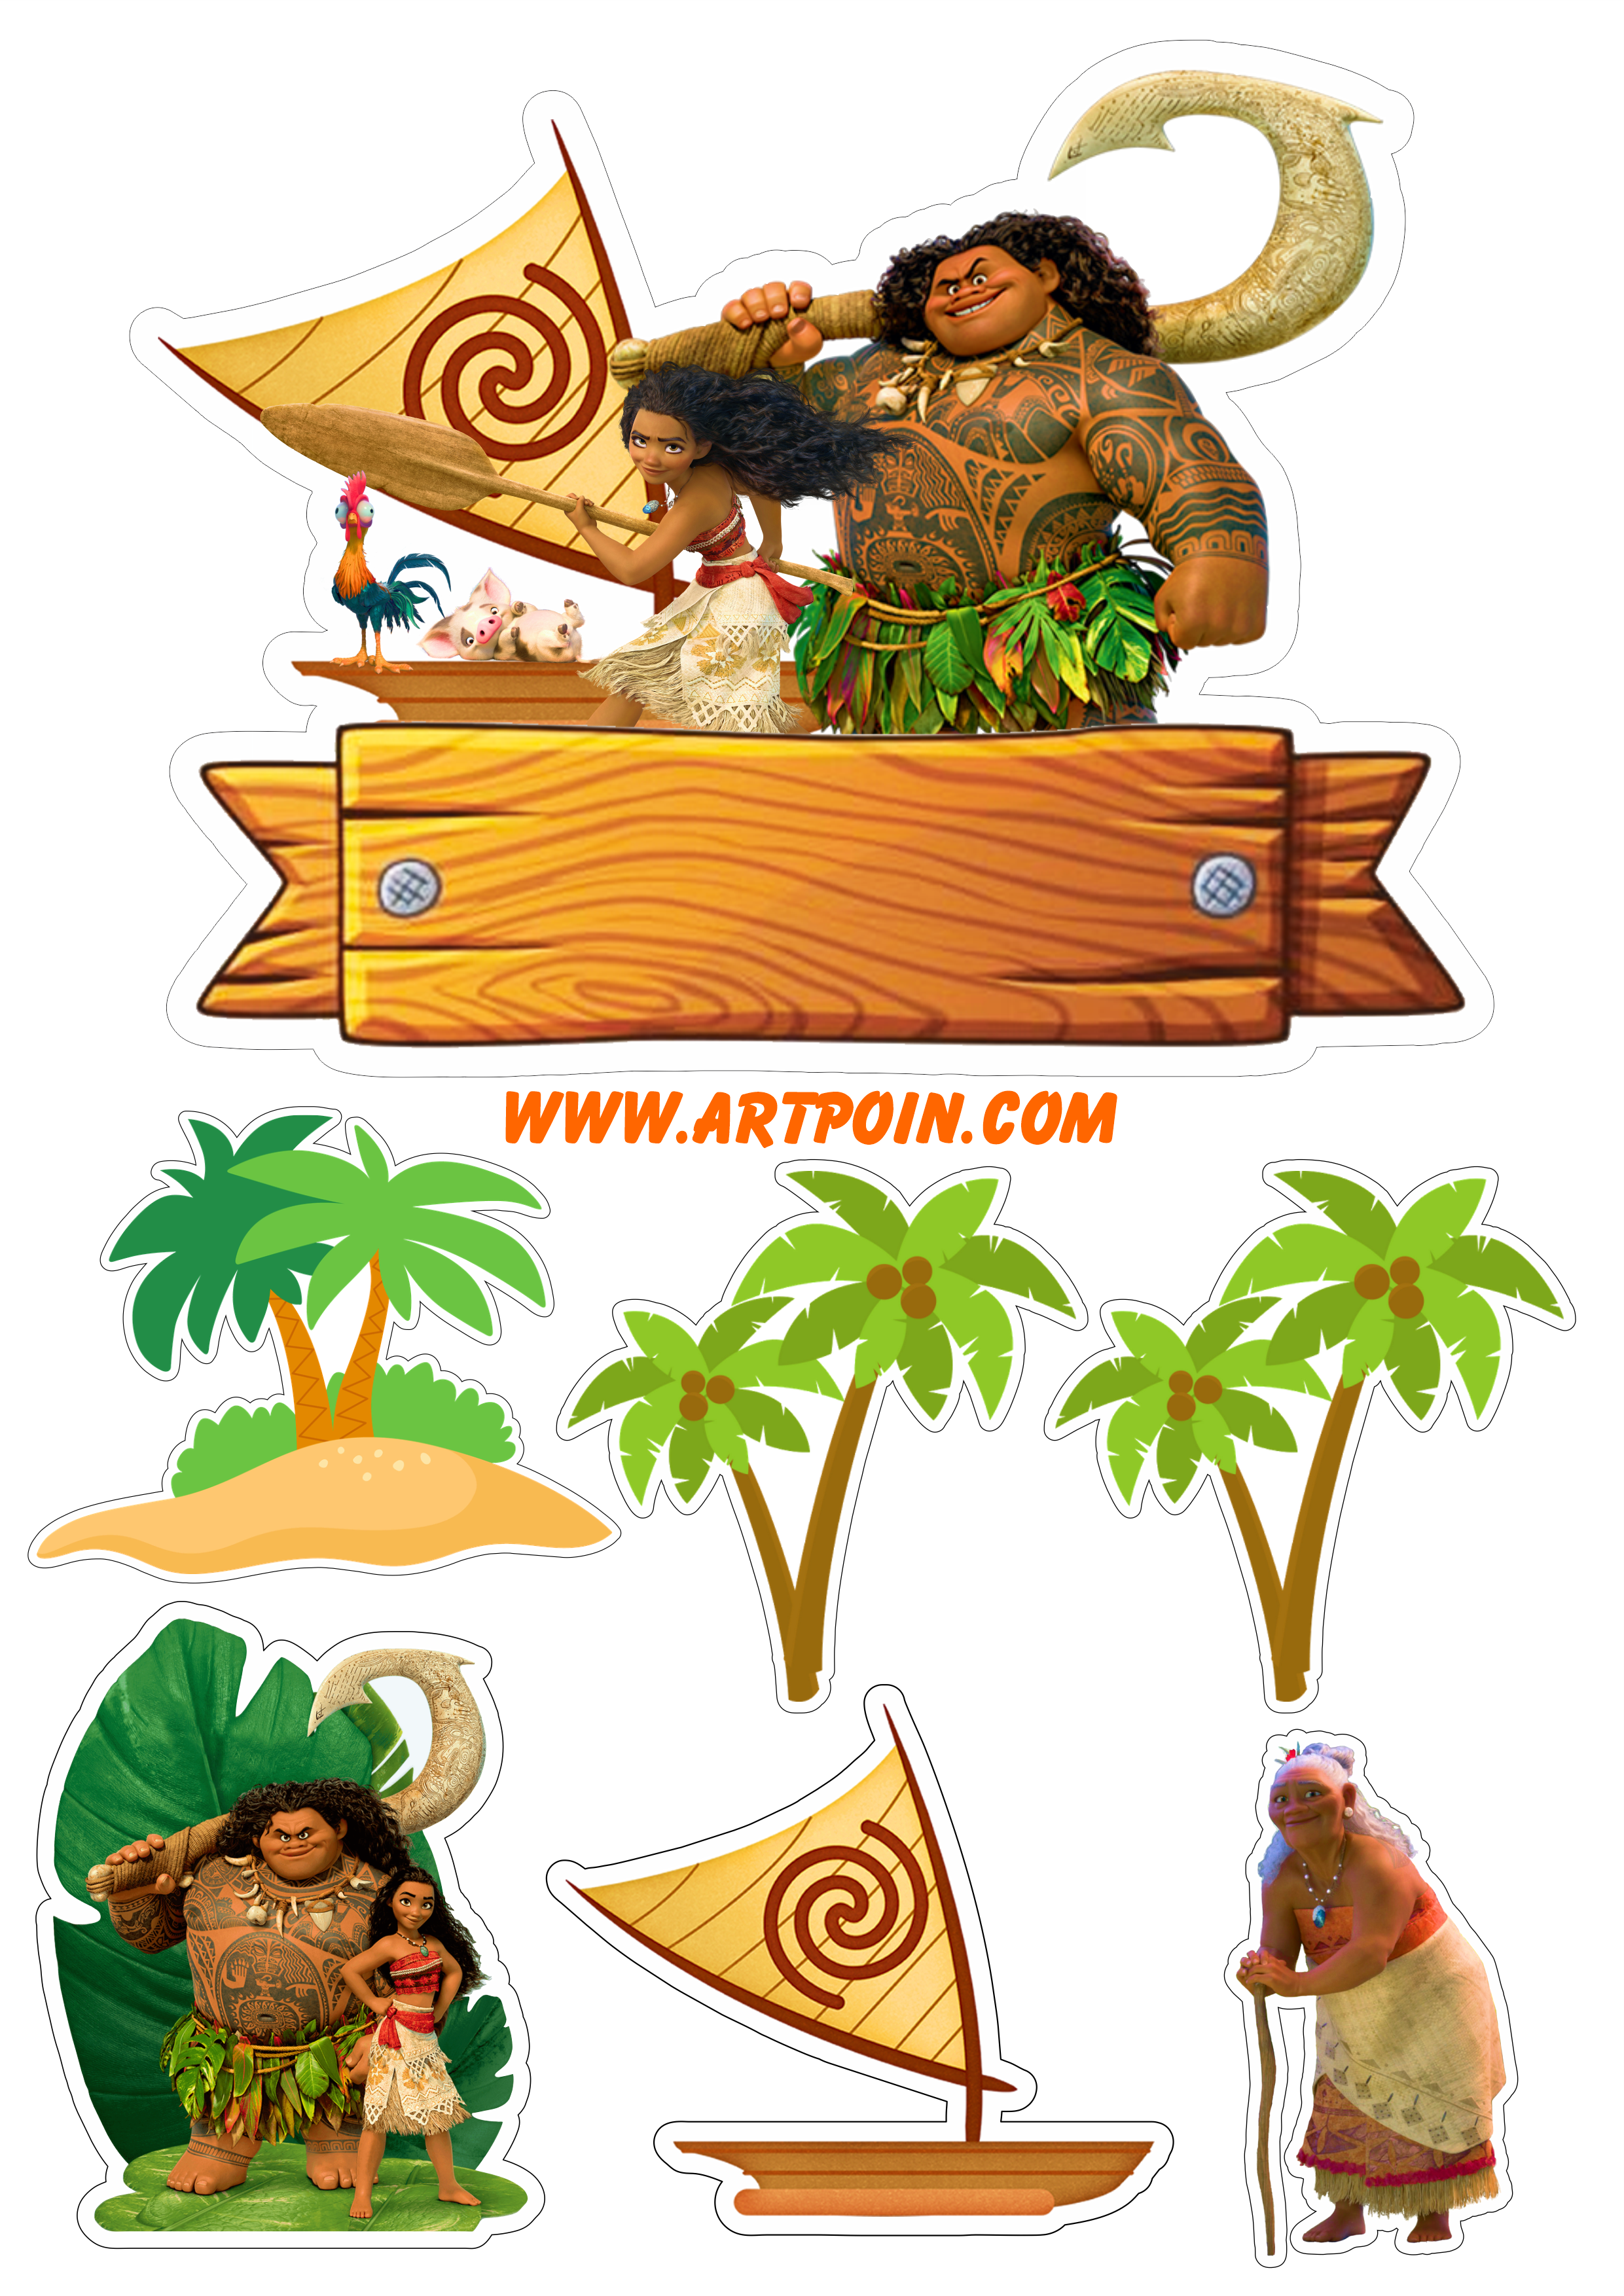 Topo de bolo para imprimir Moana e Maui barquinho animação disney decoração de festa de aniversário infantil papelaria Avaí png